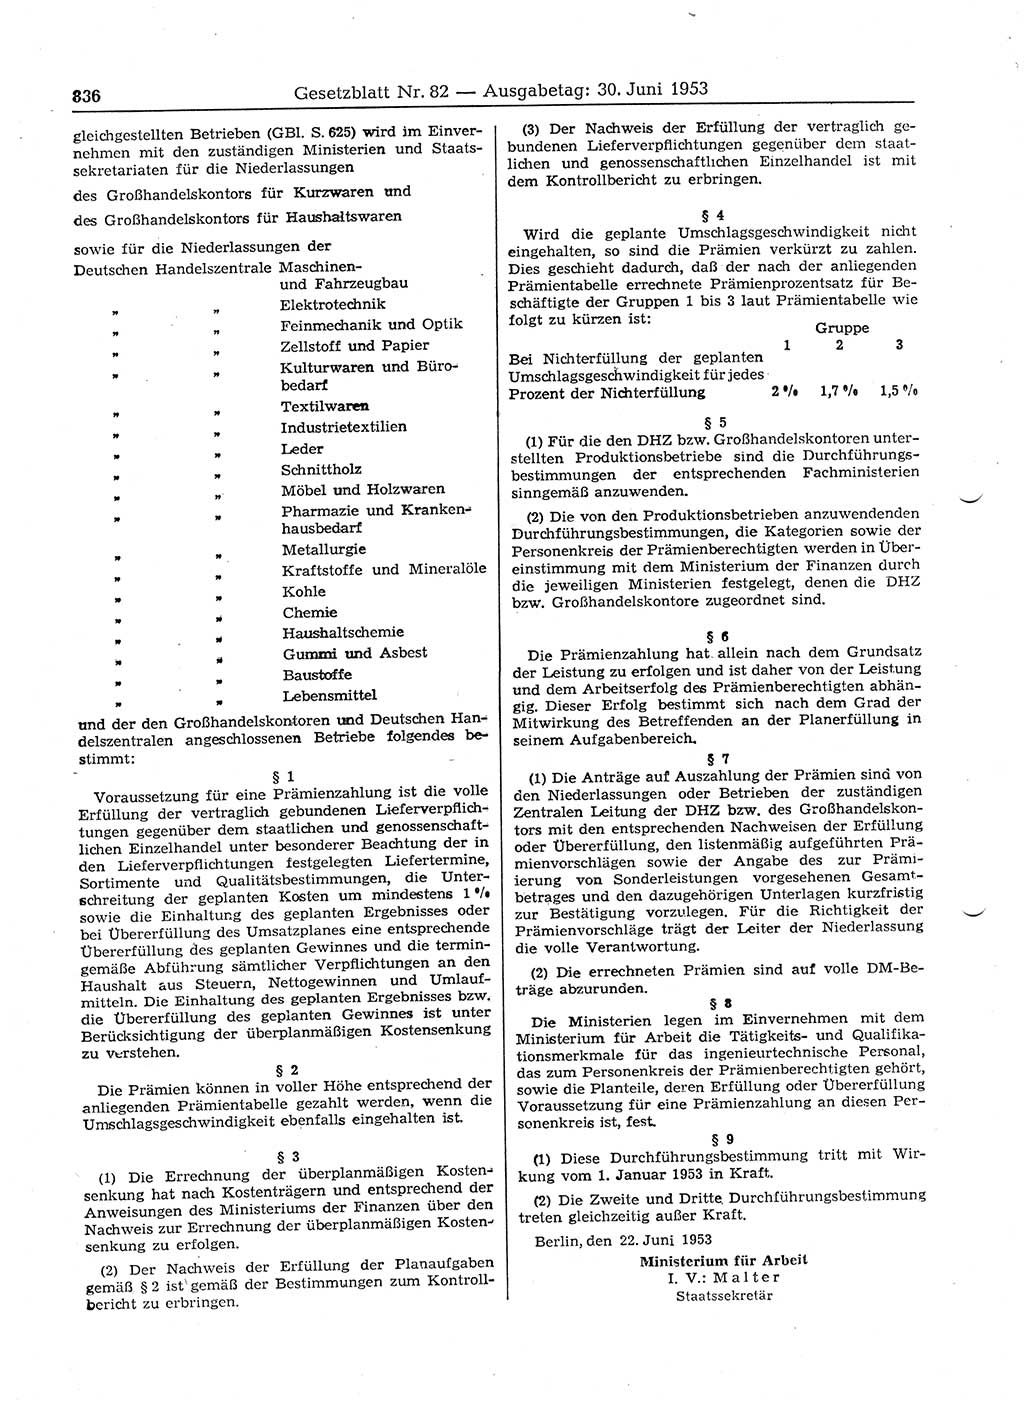 Gesetzblatt (GBl.) der Deutschen Demokratischen Republik (DDR) 1953, Seite 836 (GBl. DDR 1953, S. 836)